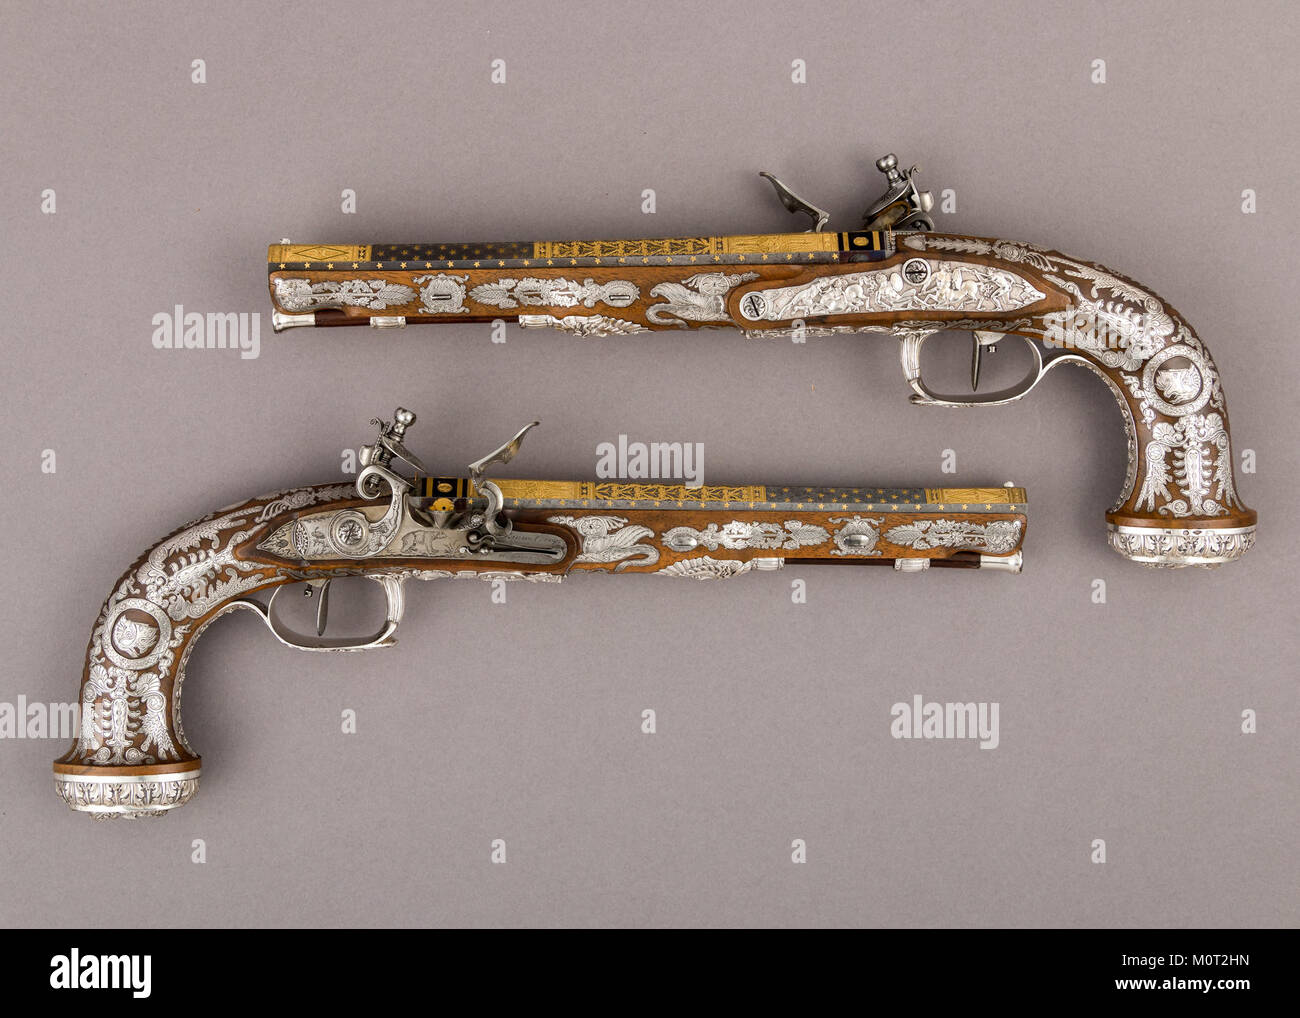 Incassato Coppia di Flintlock Pistols con accessori incontrato LC-28 196 1a b 2a l-022 Foto Stock